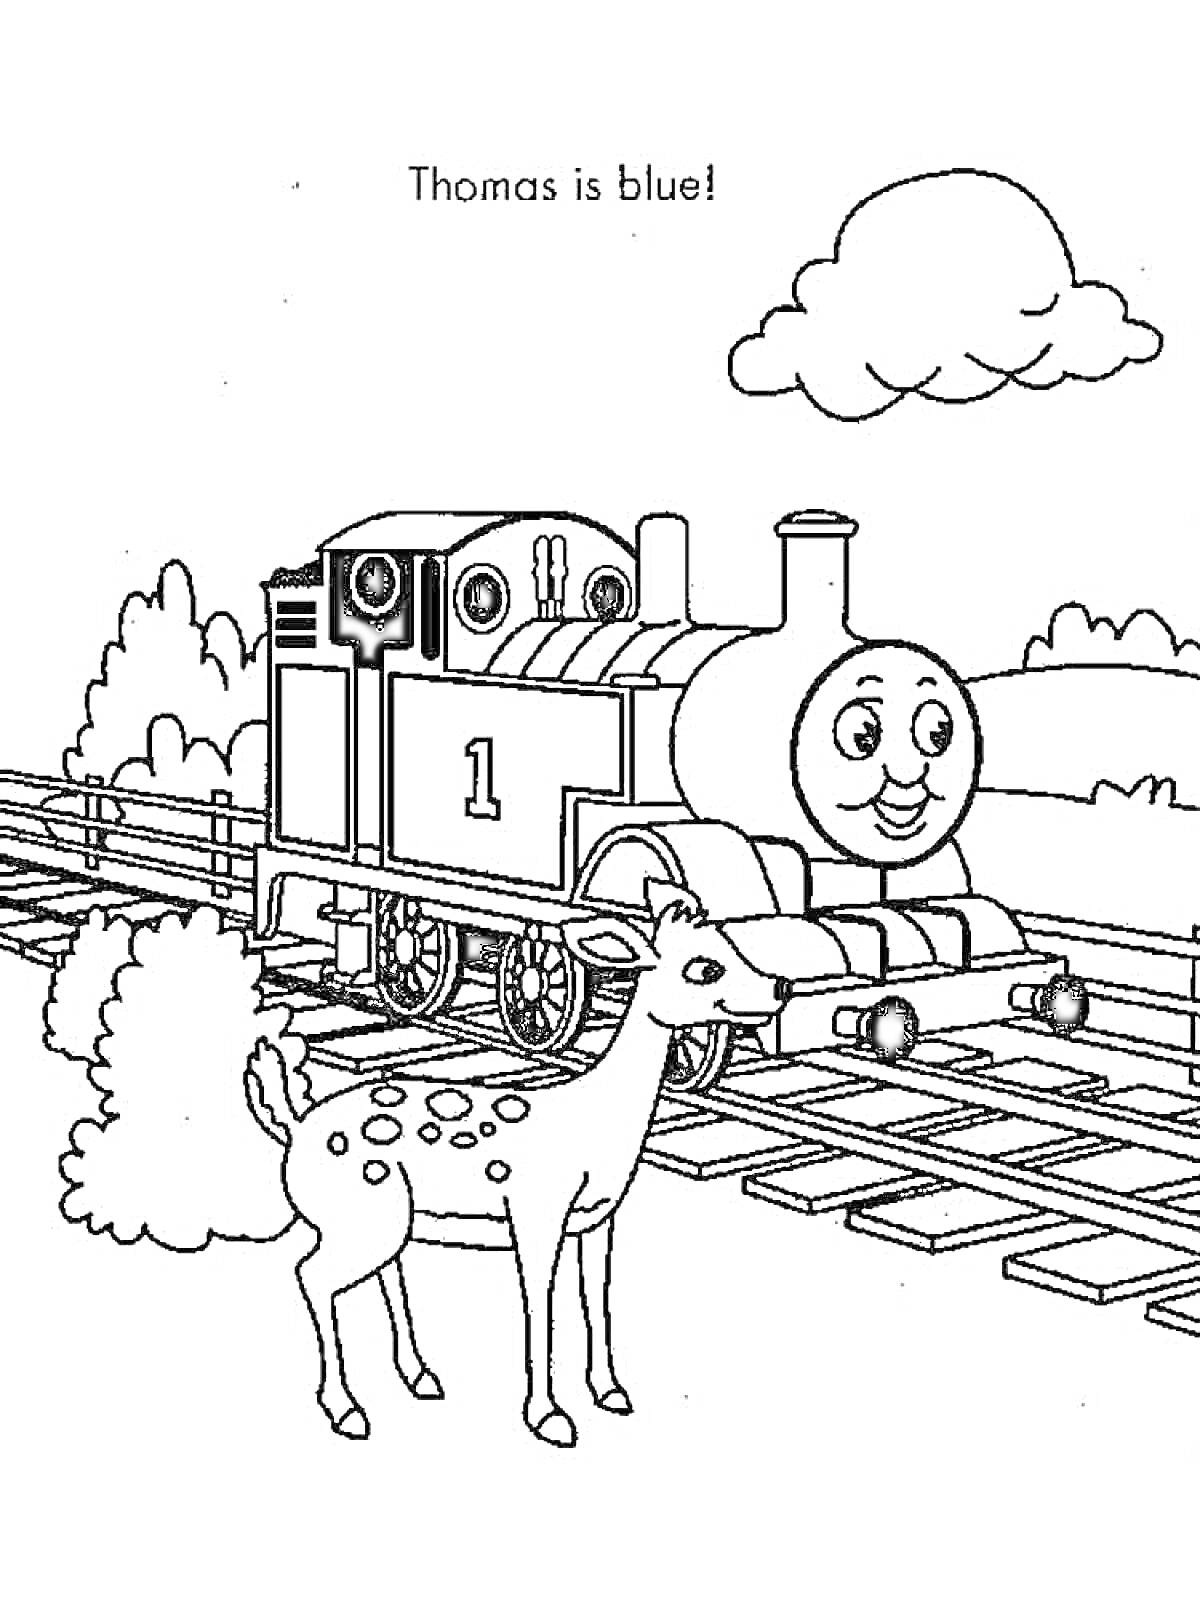 Раскраска Паровозик Томас на железной дороге рядом с оленёнком на фоне облаков и деревьев